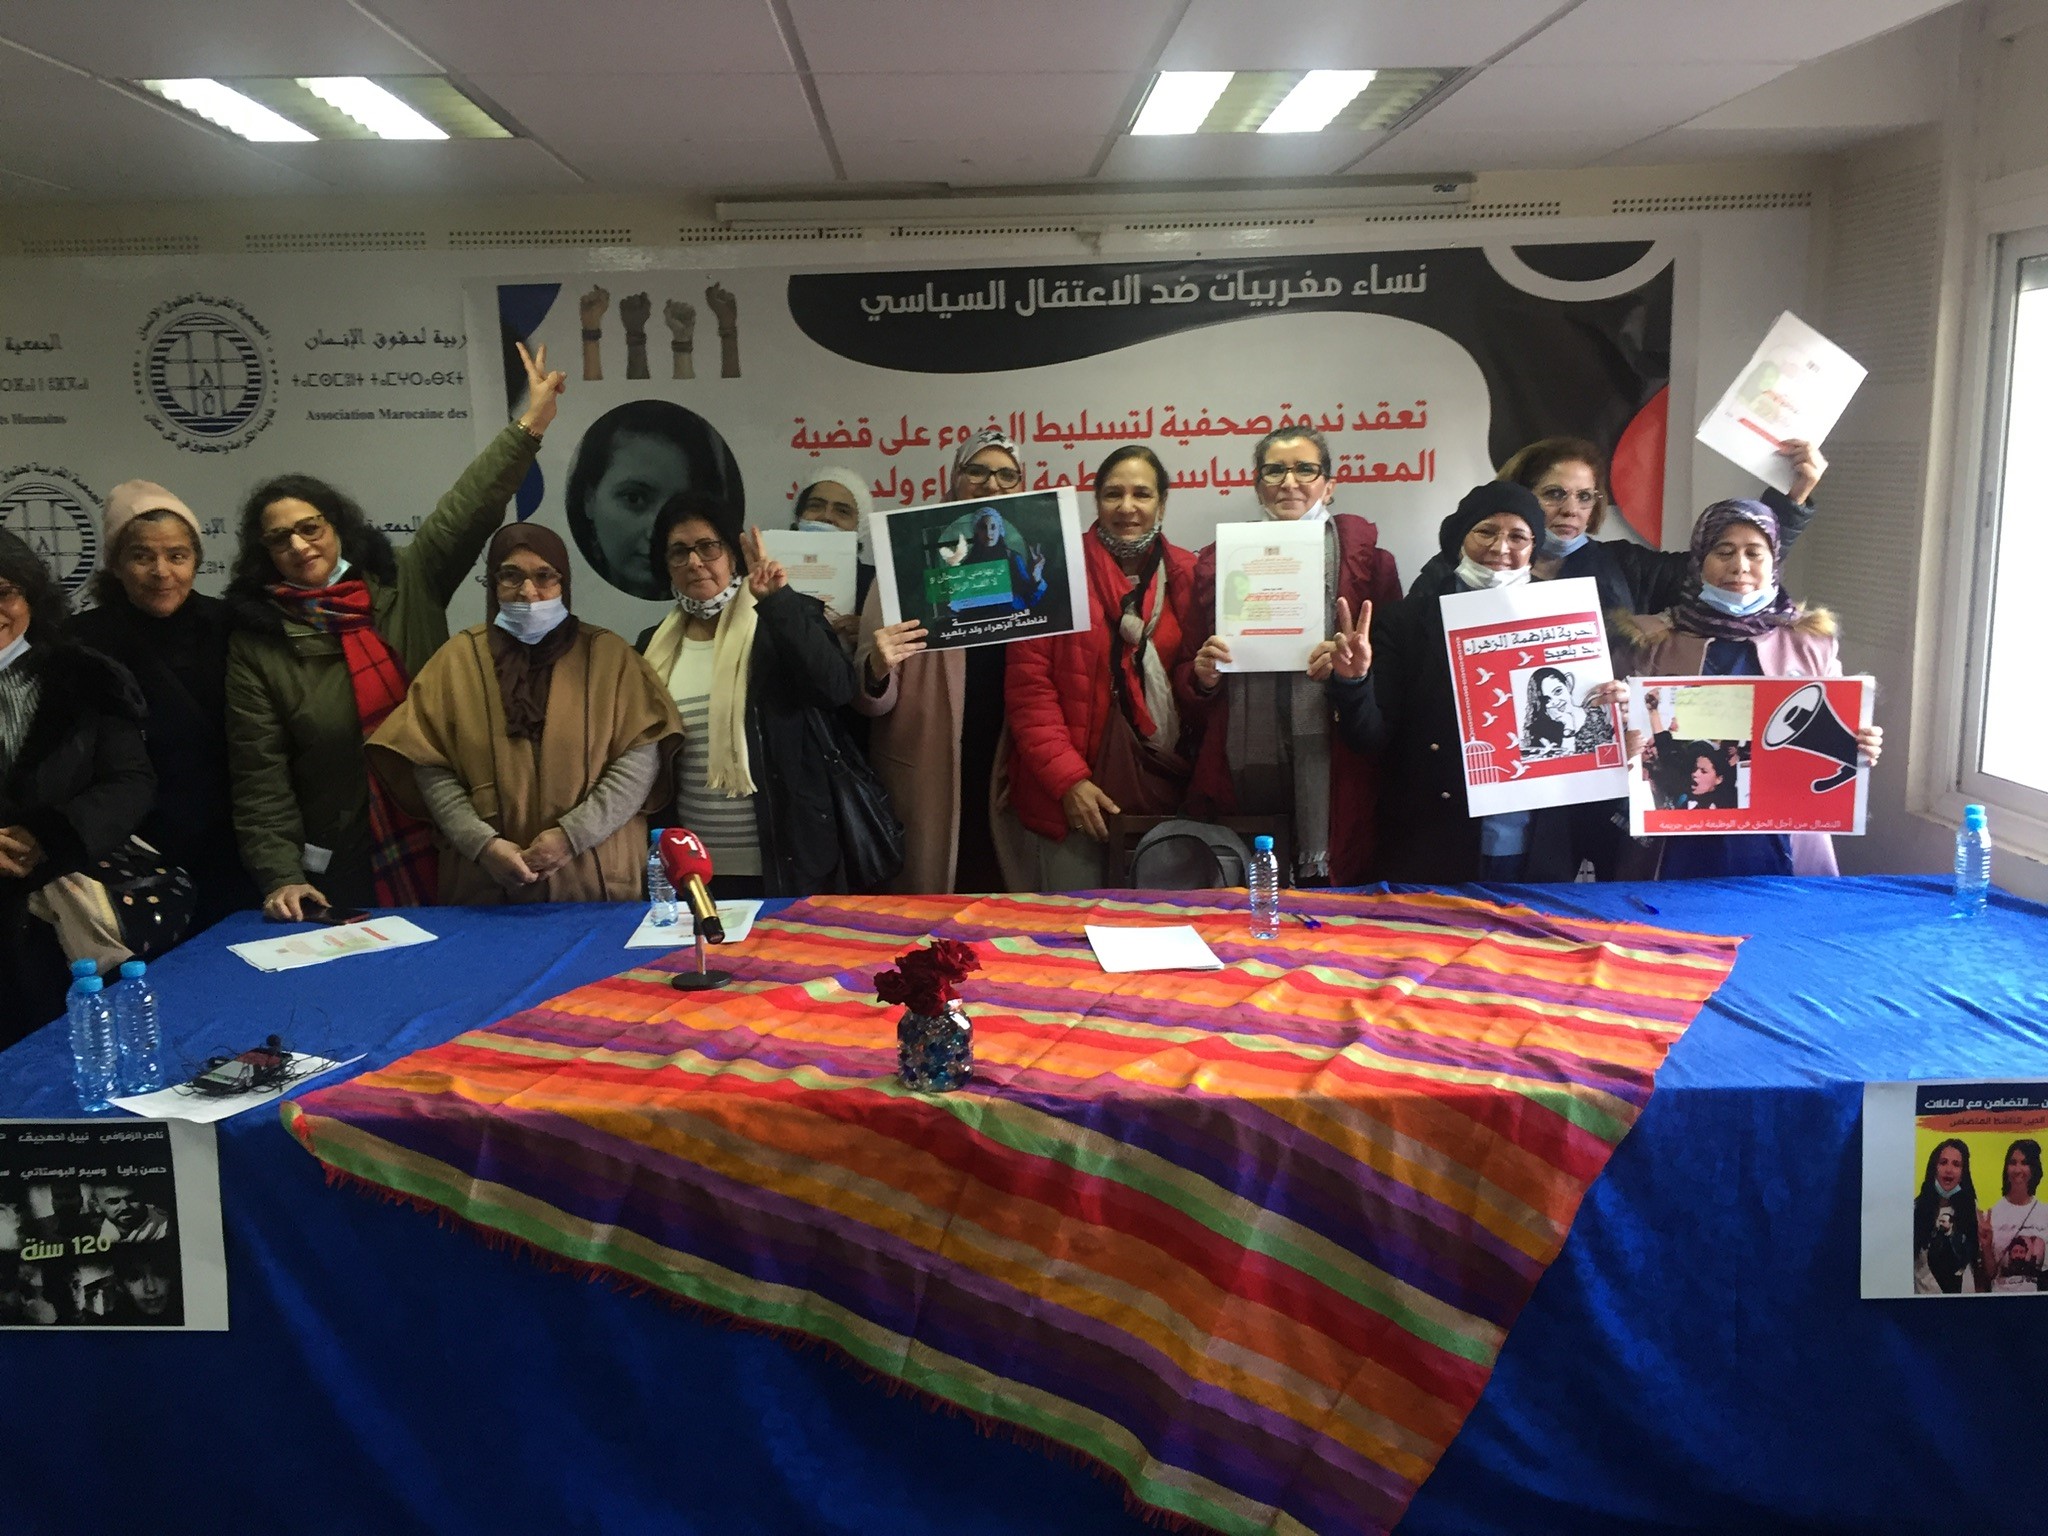 La detención de una activista marroquí aviva una campaña de solidaridad